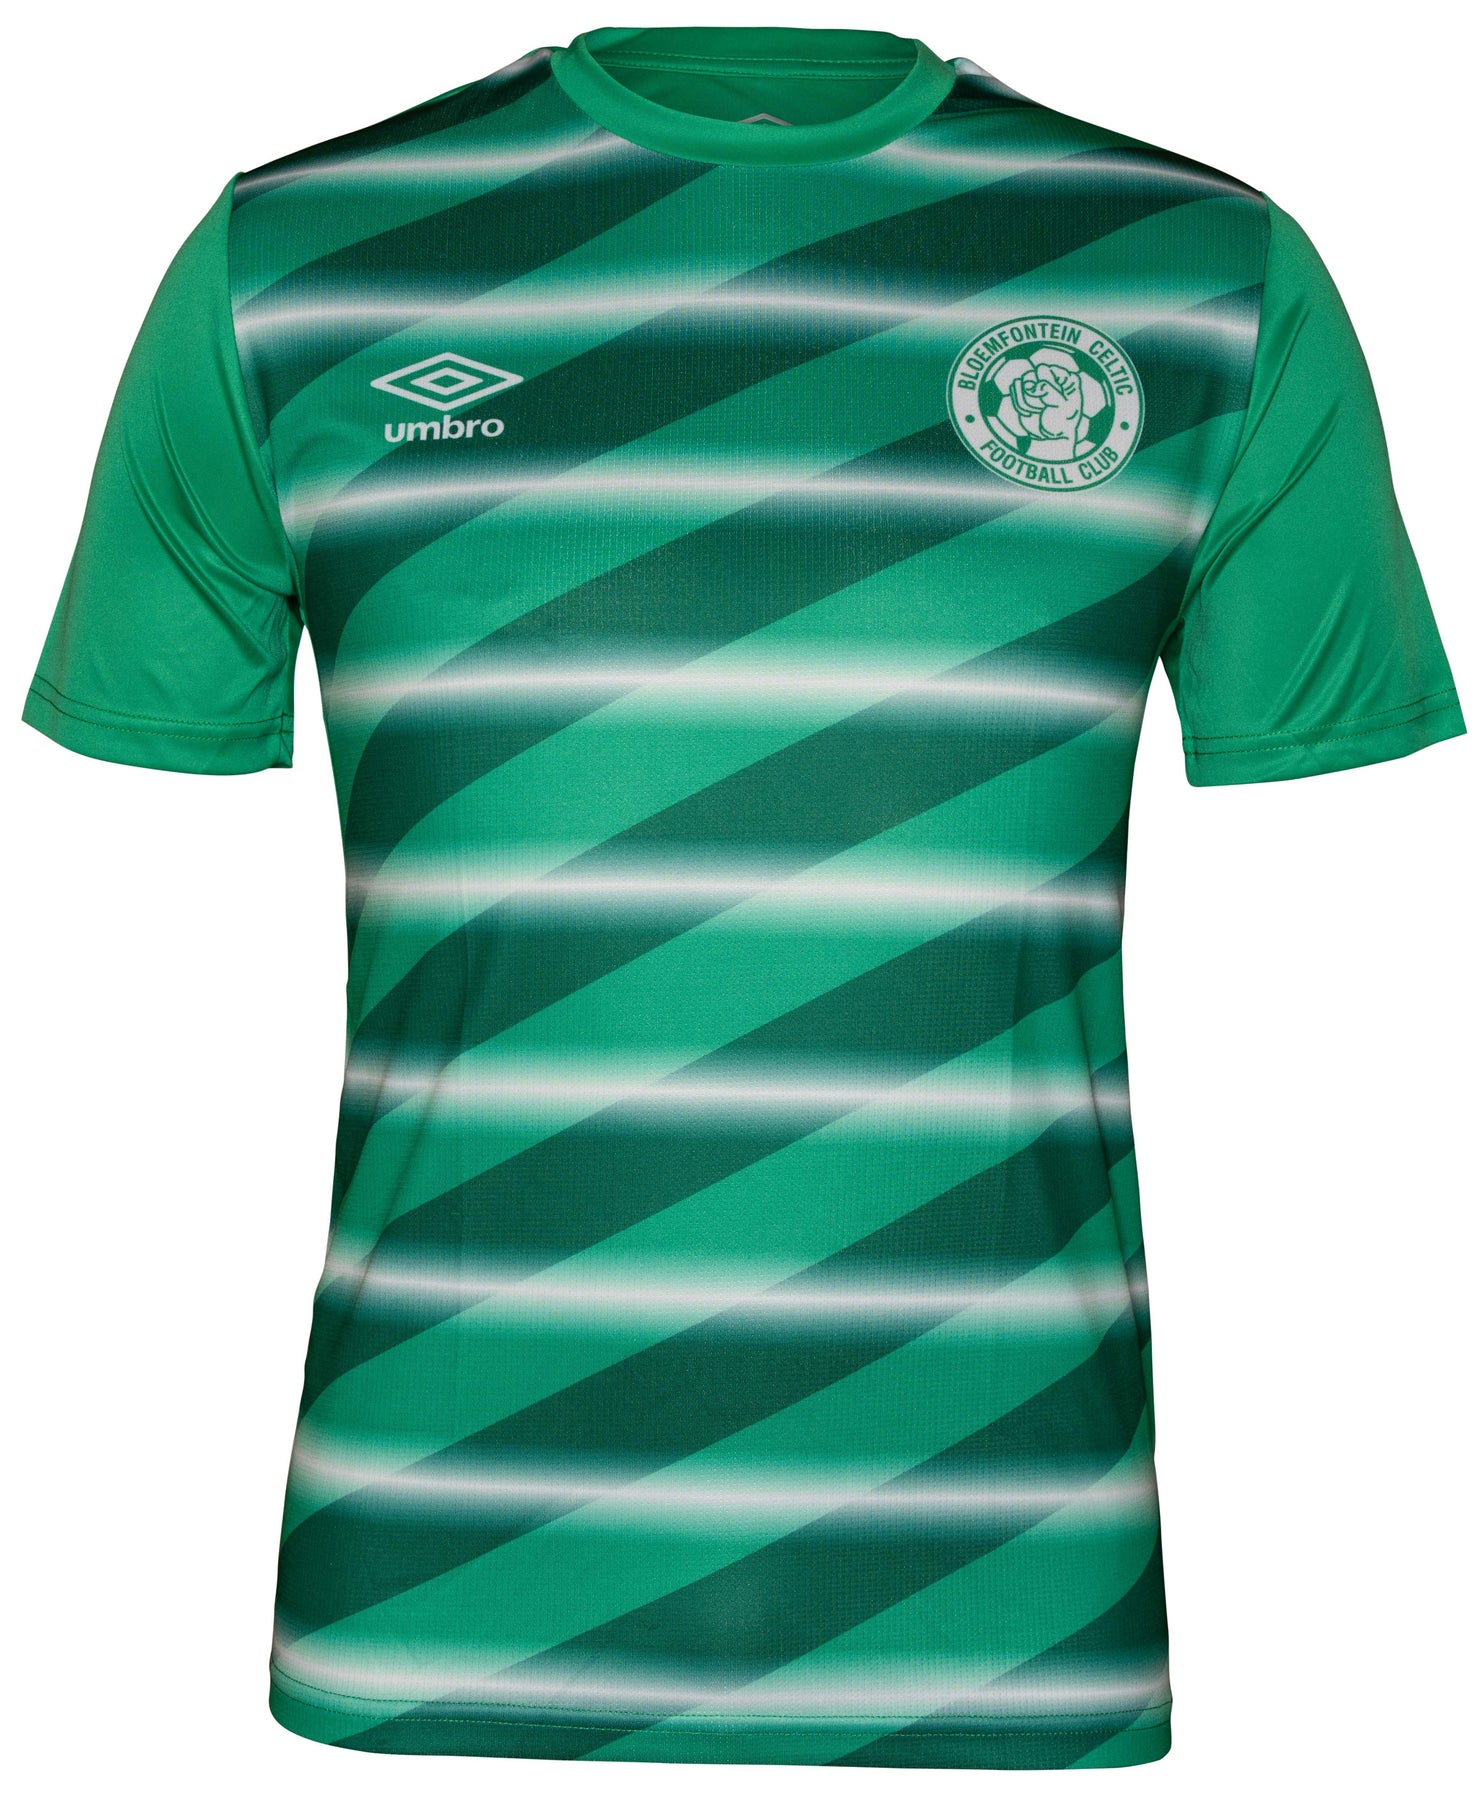 Celtic 2021/22 home kit. : r/CelticFC